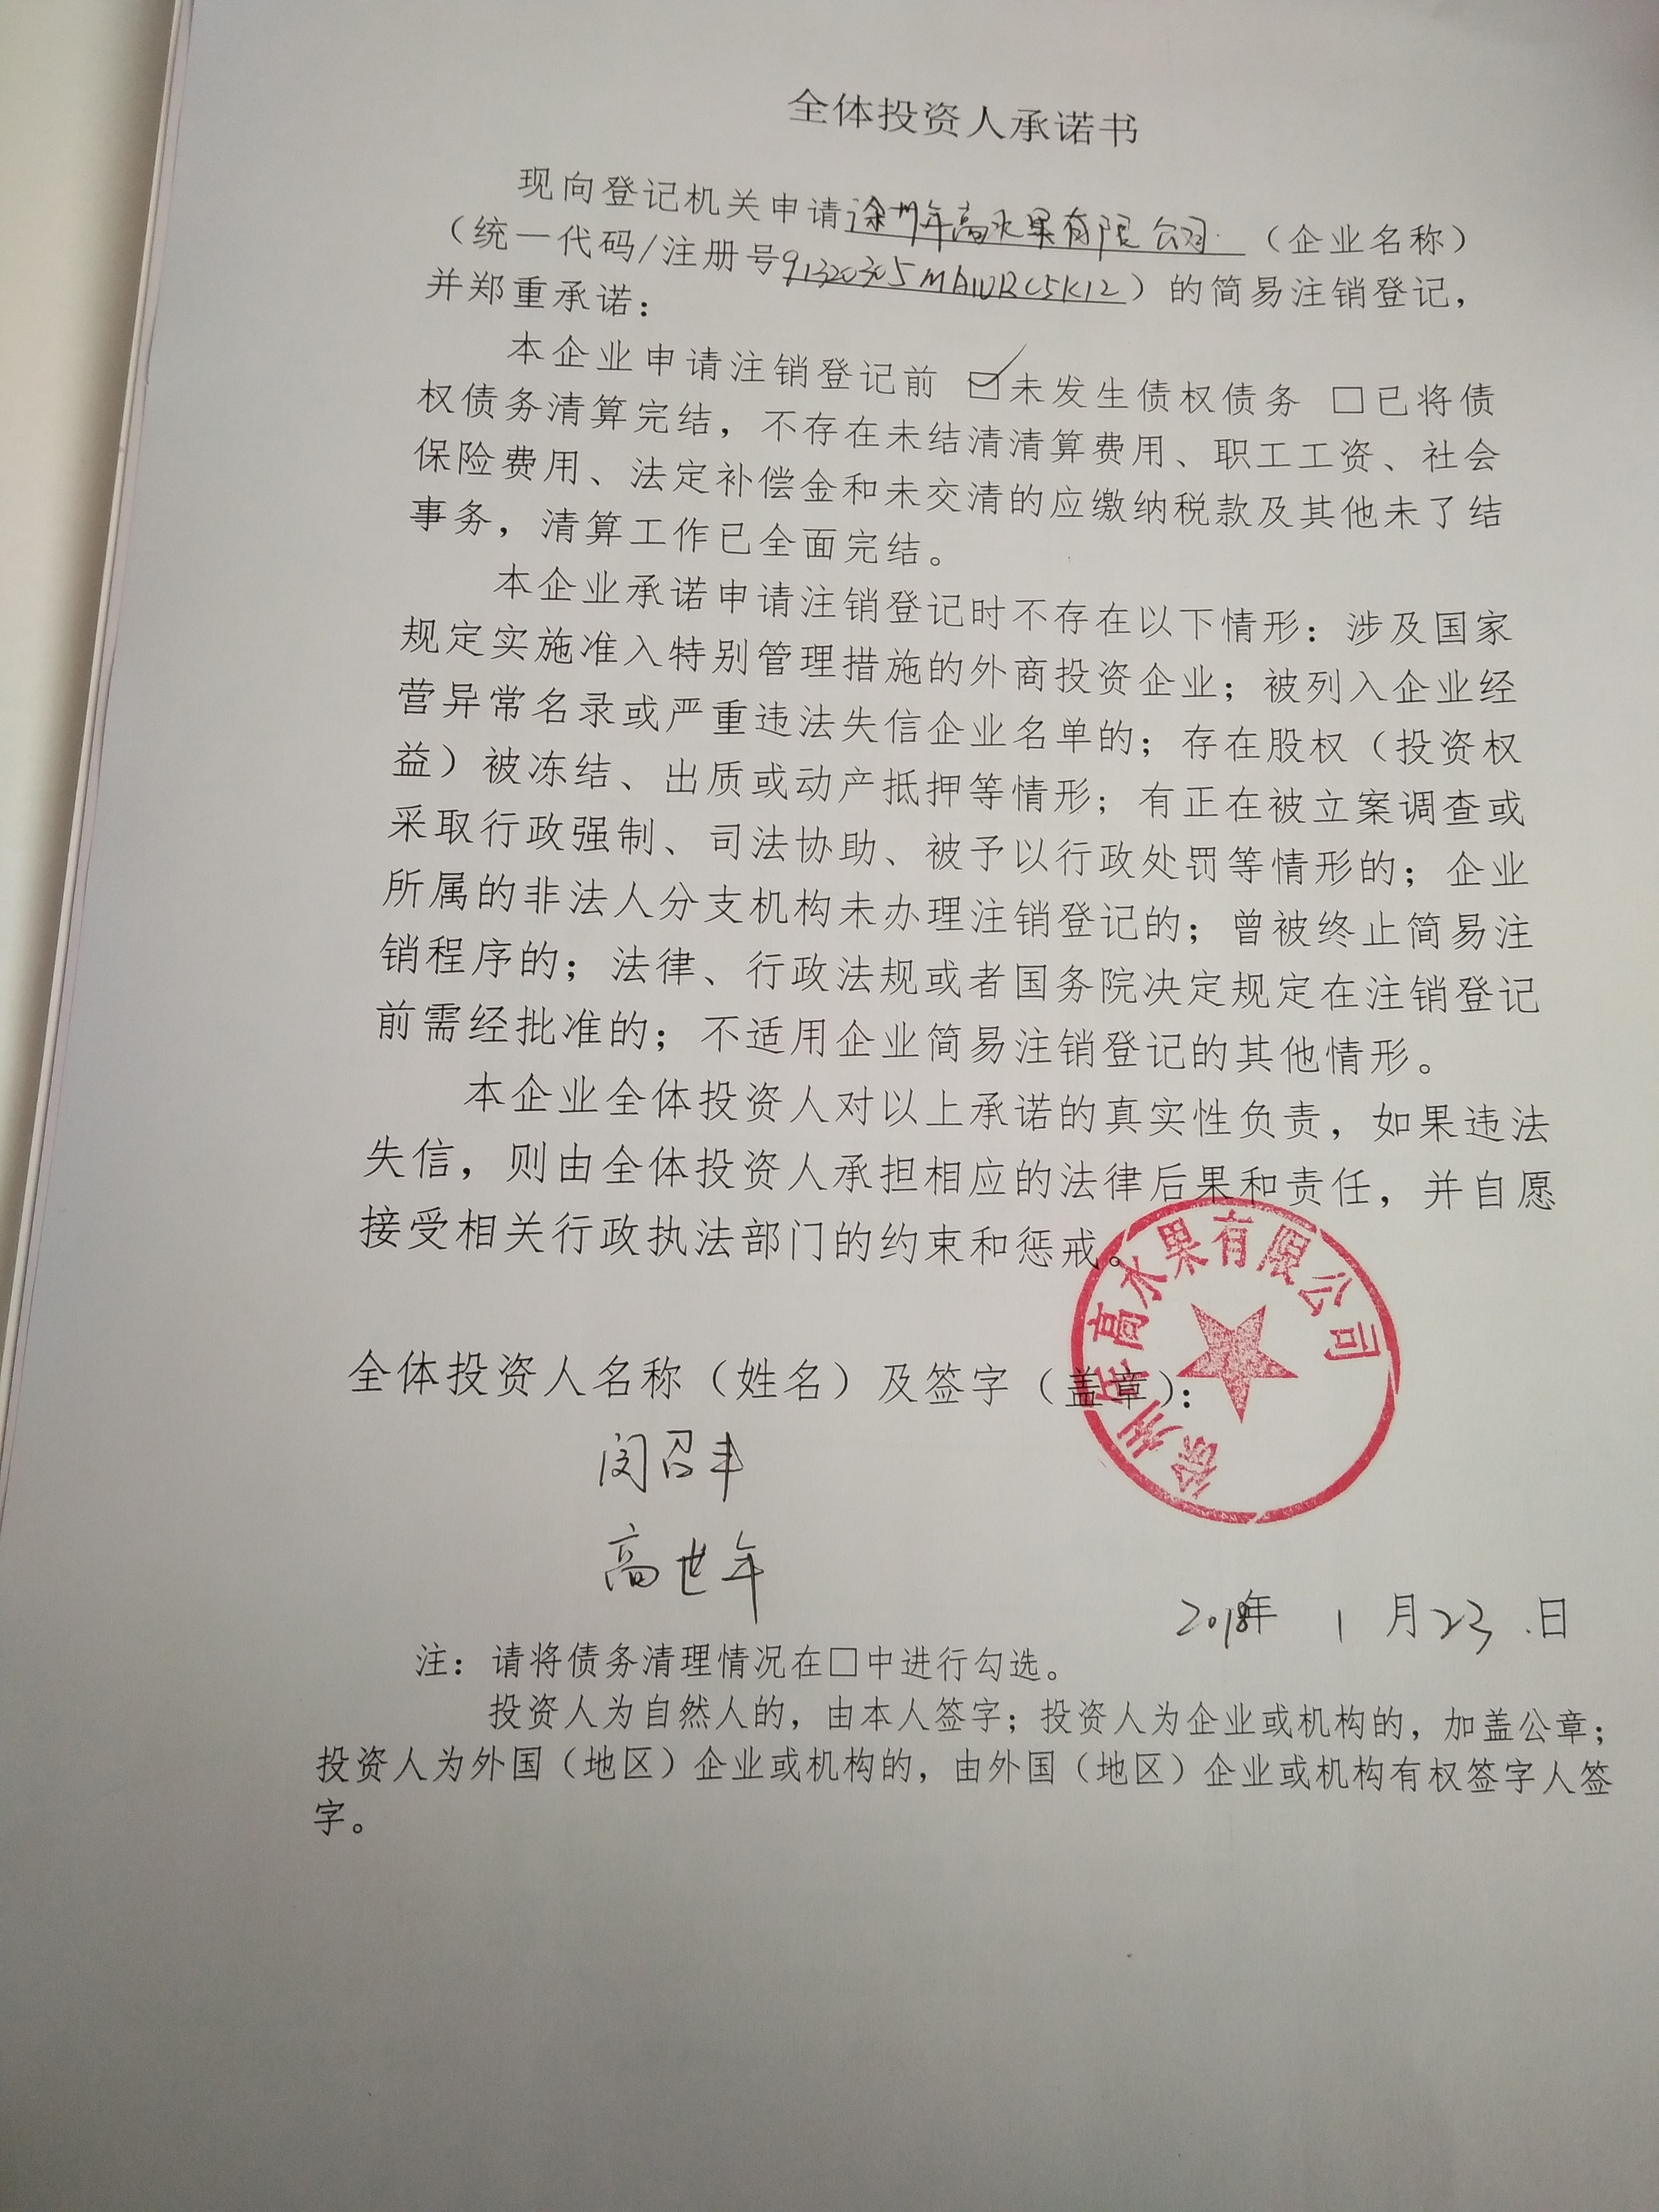 企业公告信息 企业名称 徐州年高水果有限公司 统一社会信用代码/注册